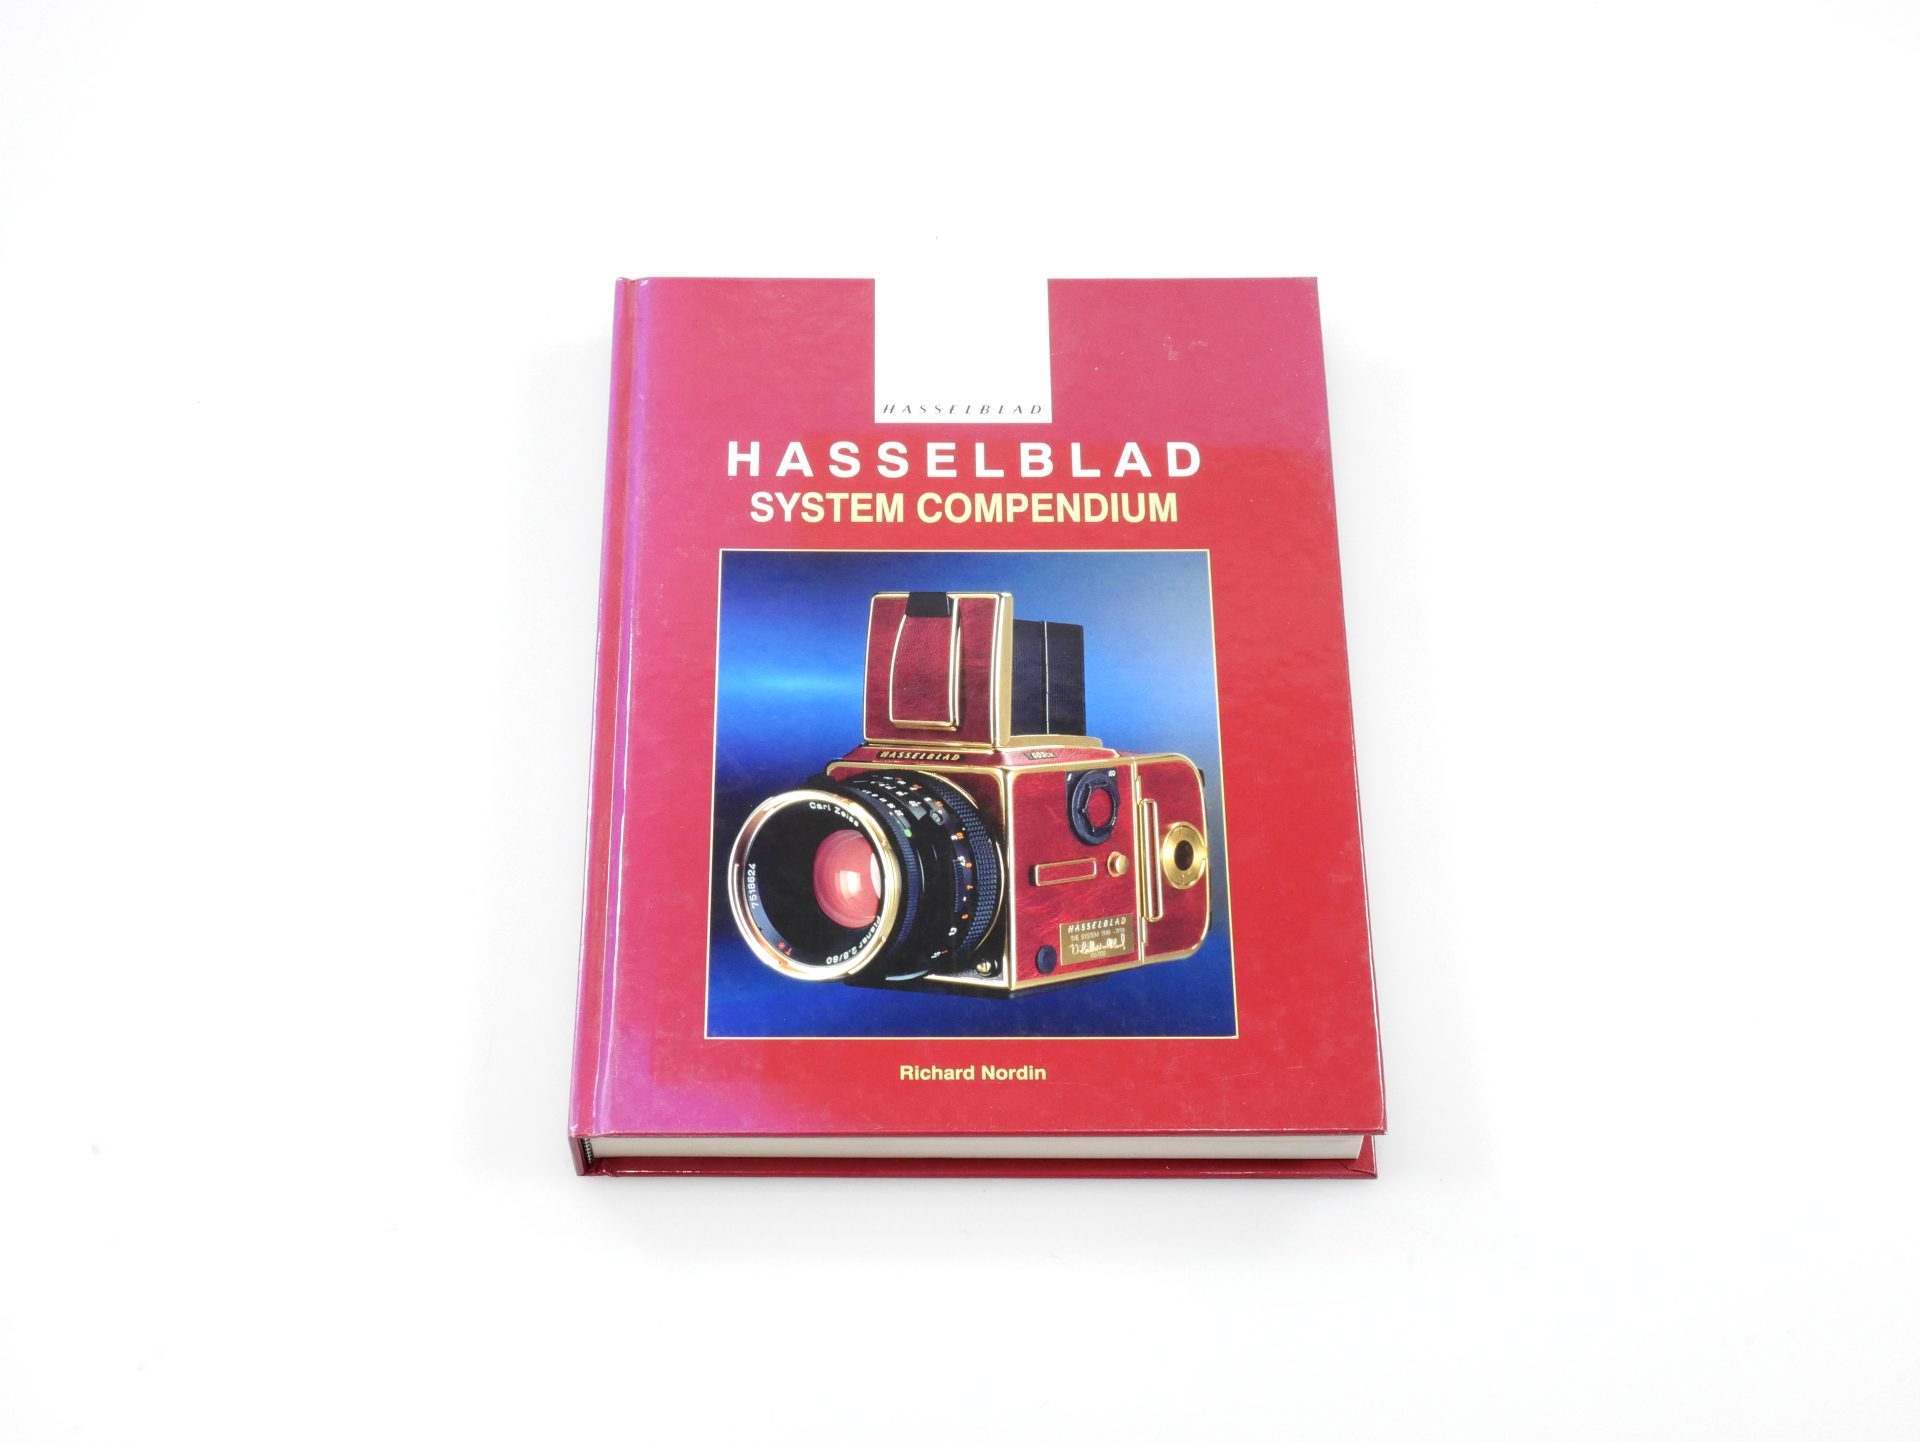 超激得好評Hasselblad System Compendium 《洋書・カメラ》 洋書